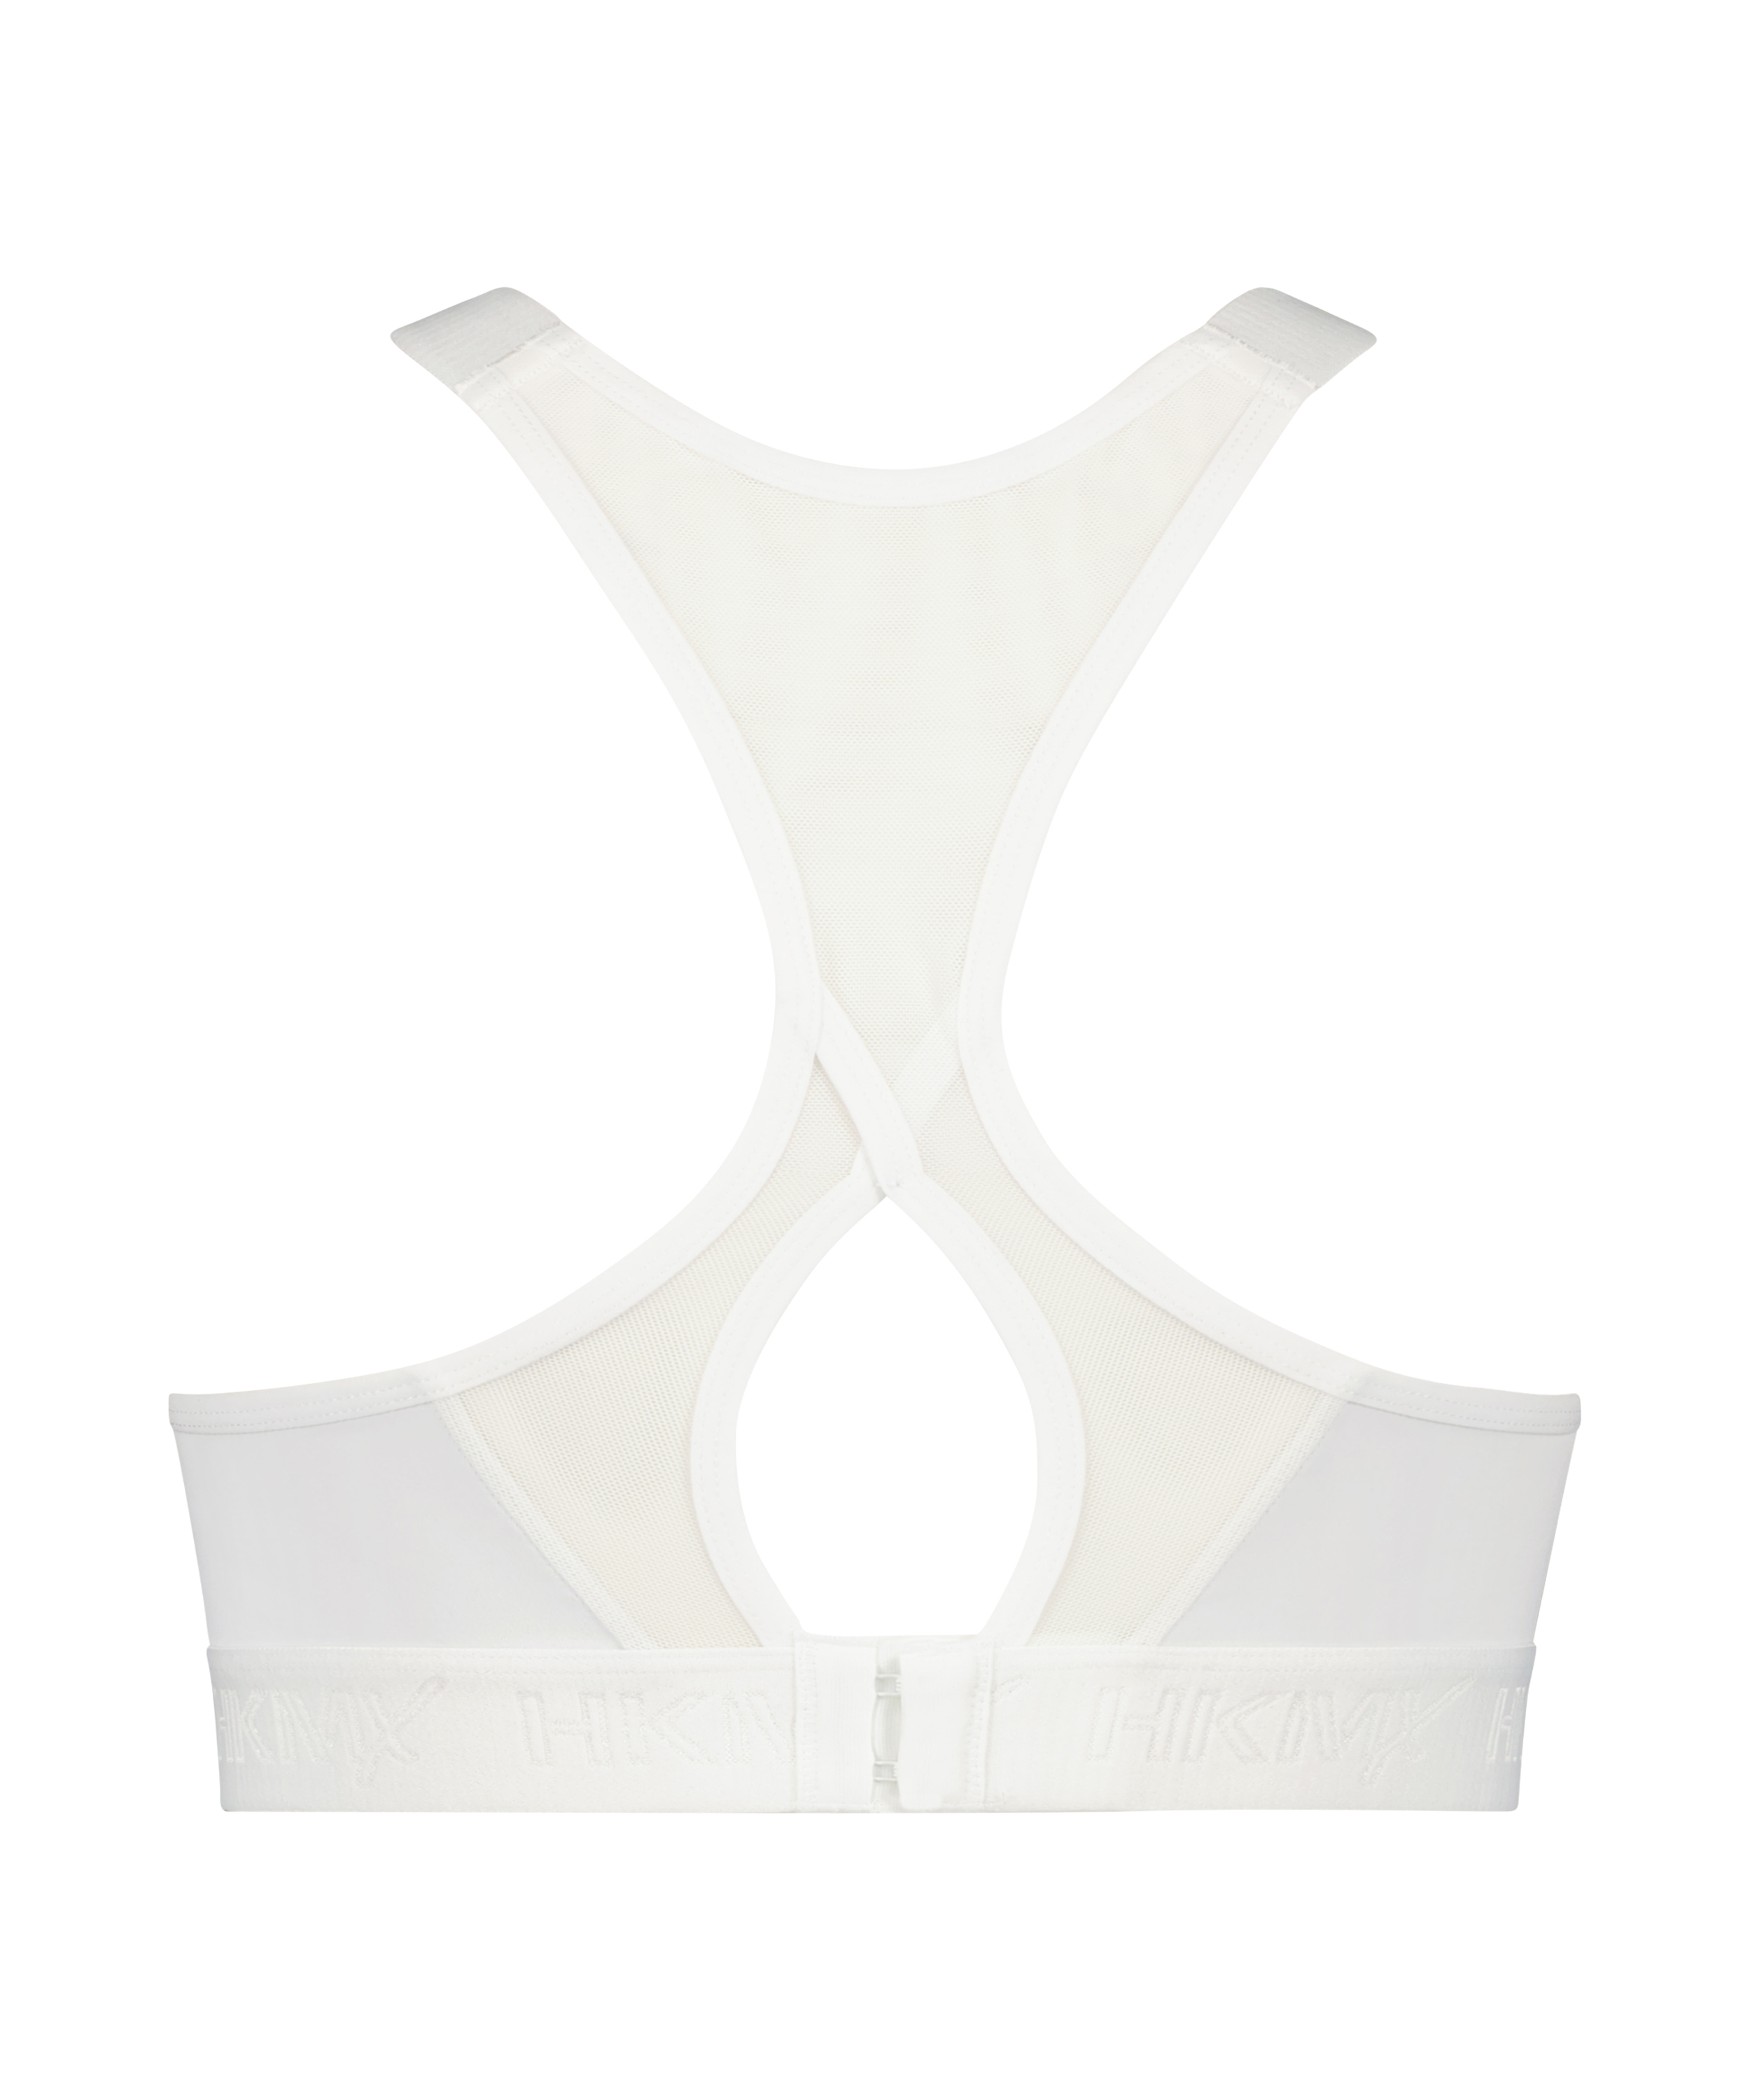 HKMX Sports bra The All Star Level 2, White, main